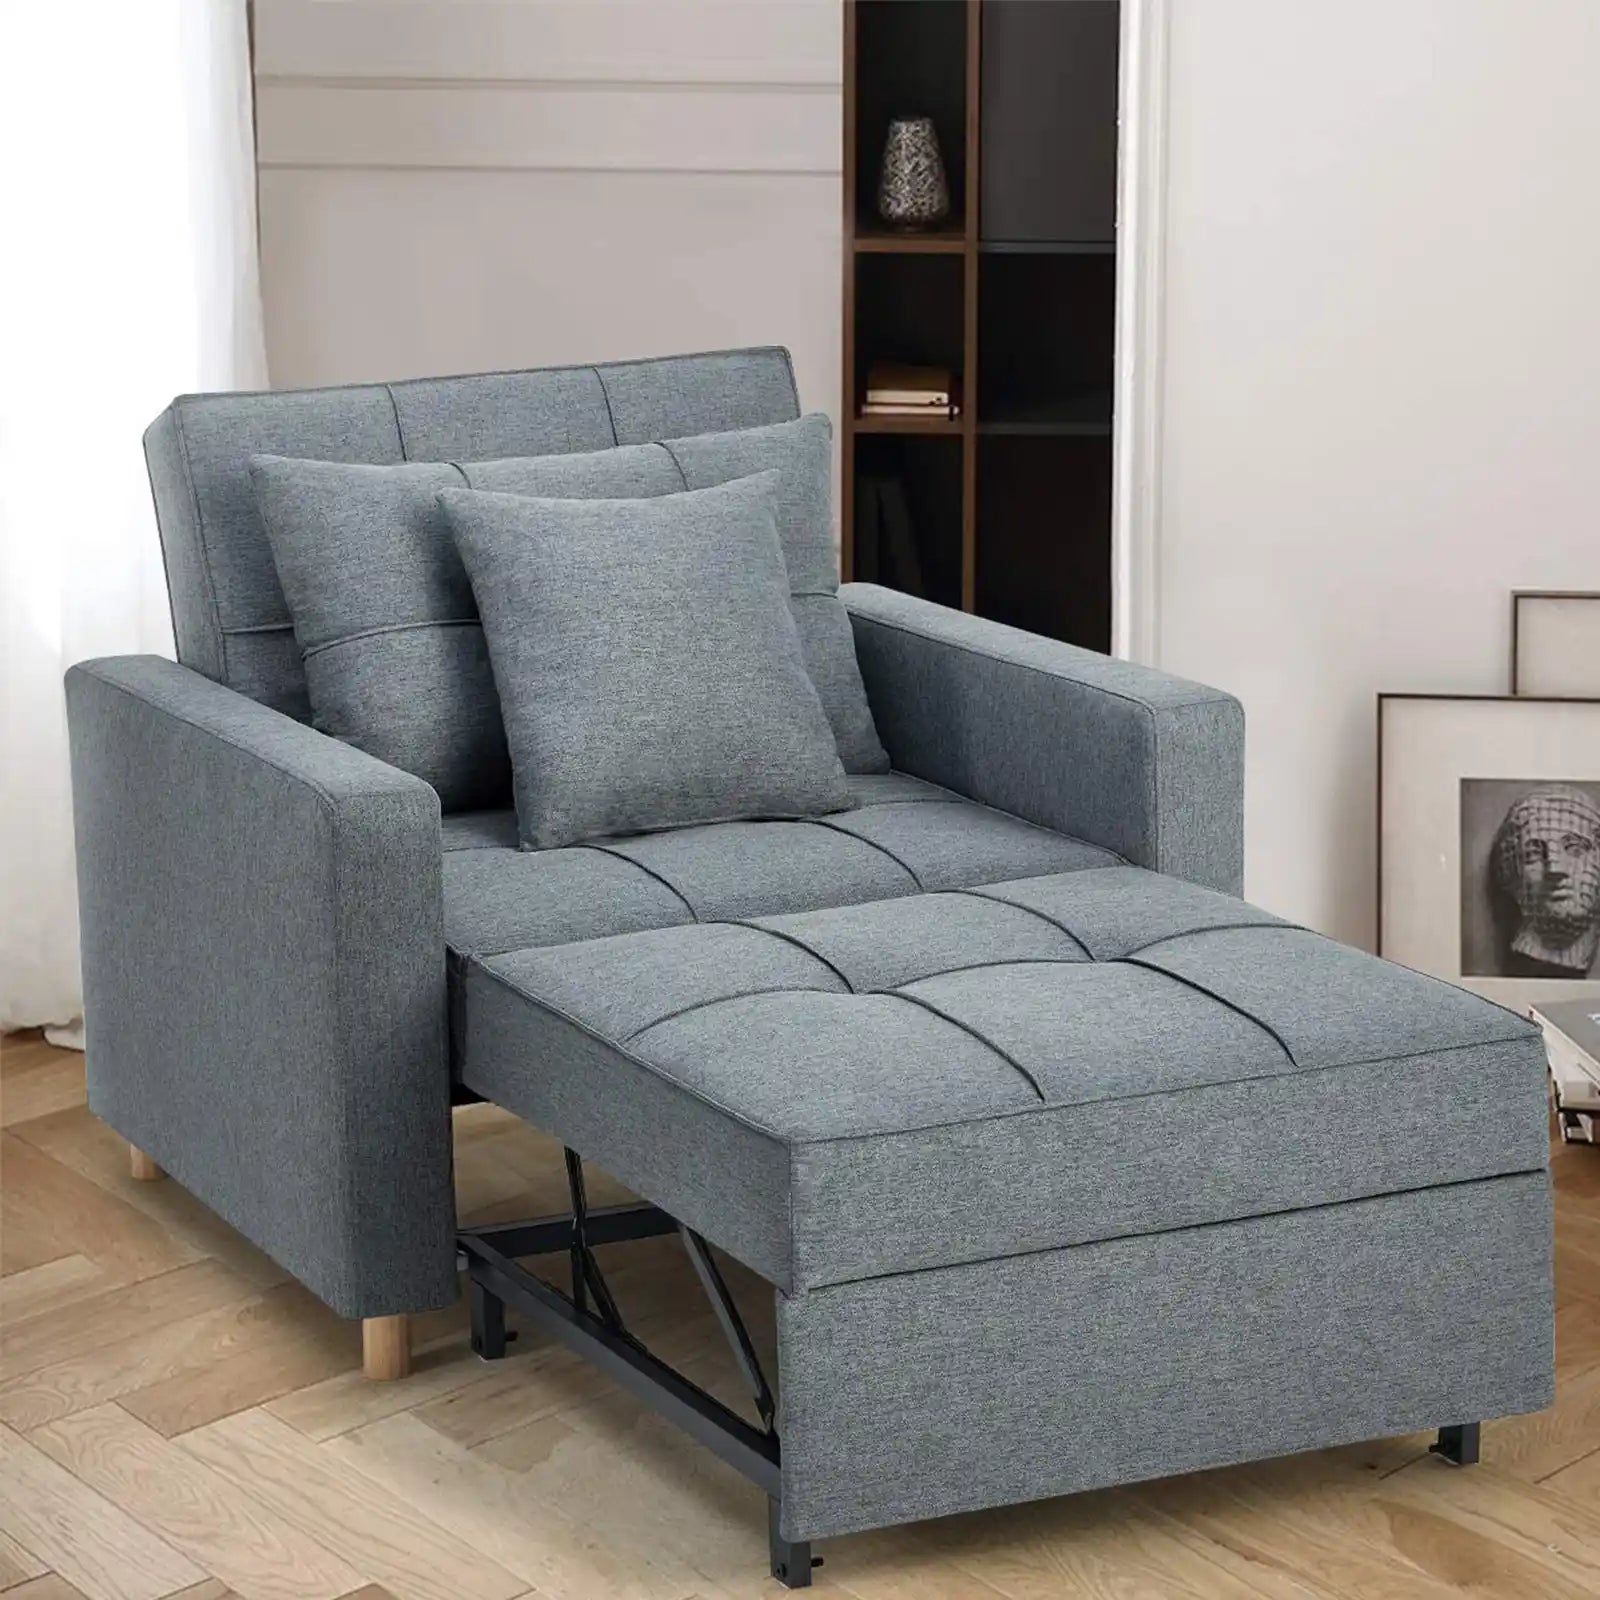 3 en 1 convertible, sillón reclinable ajustable multifuncional, sofá, cama